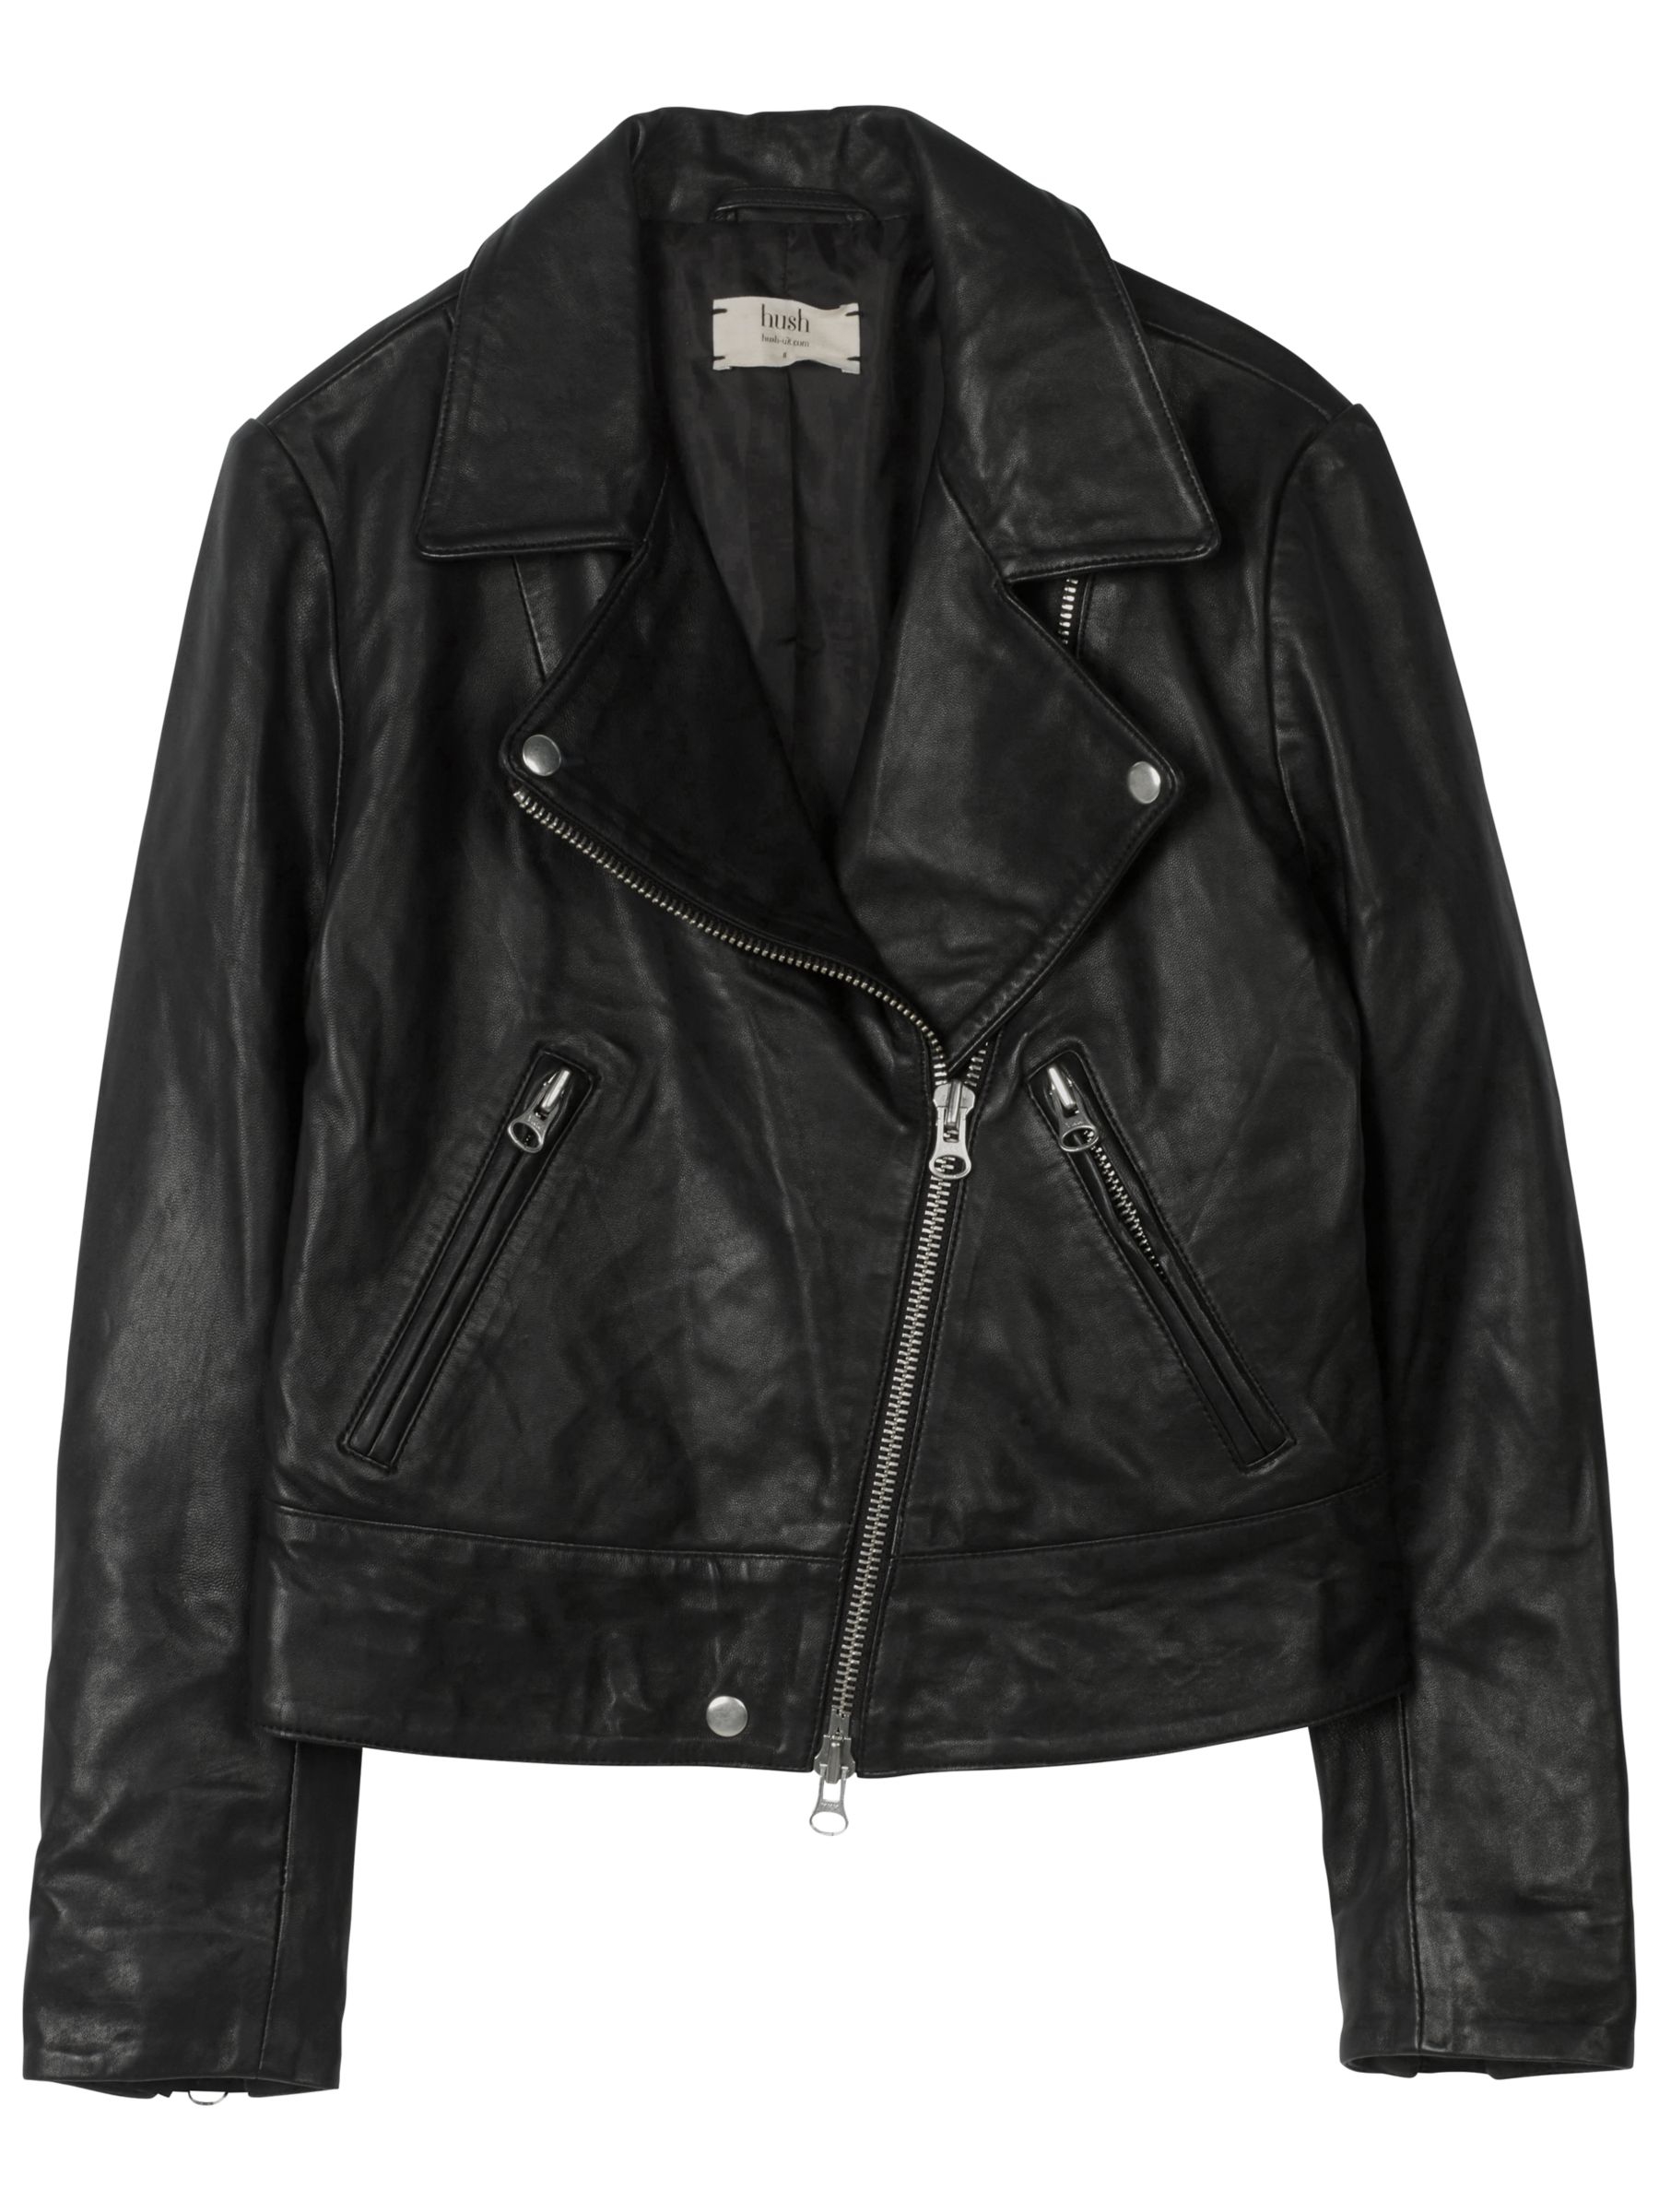 hush Onyx Leather Jacket, Black at John Lewis & Partners